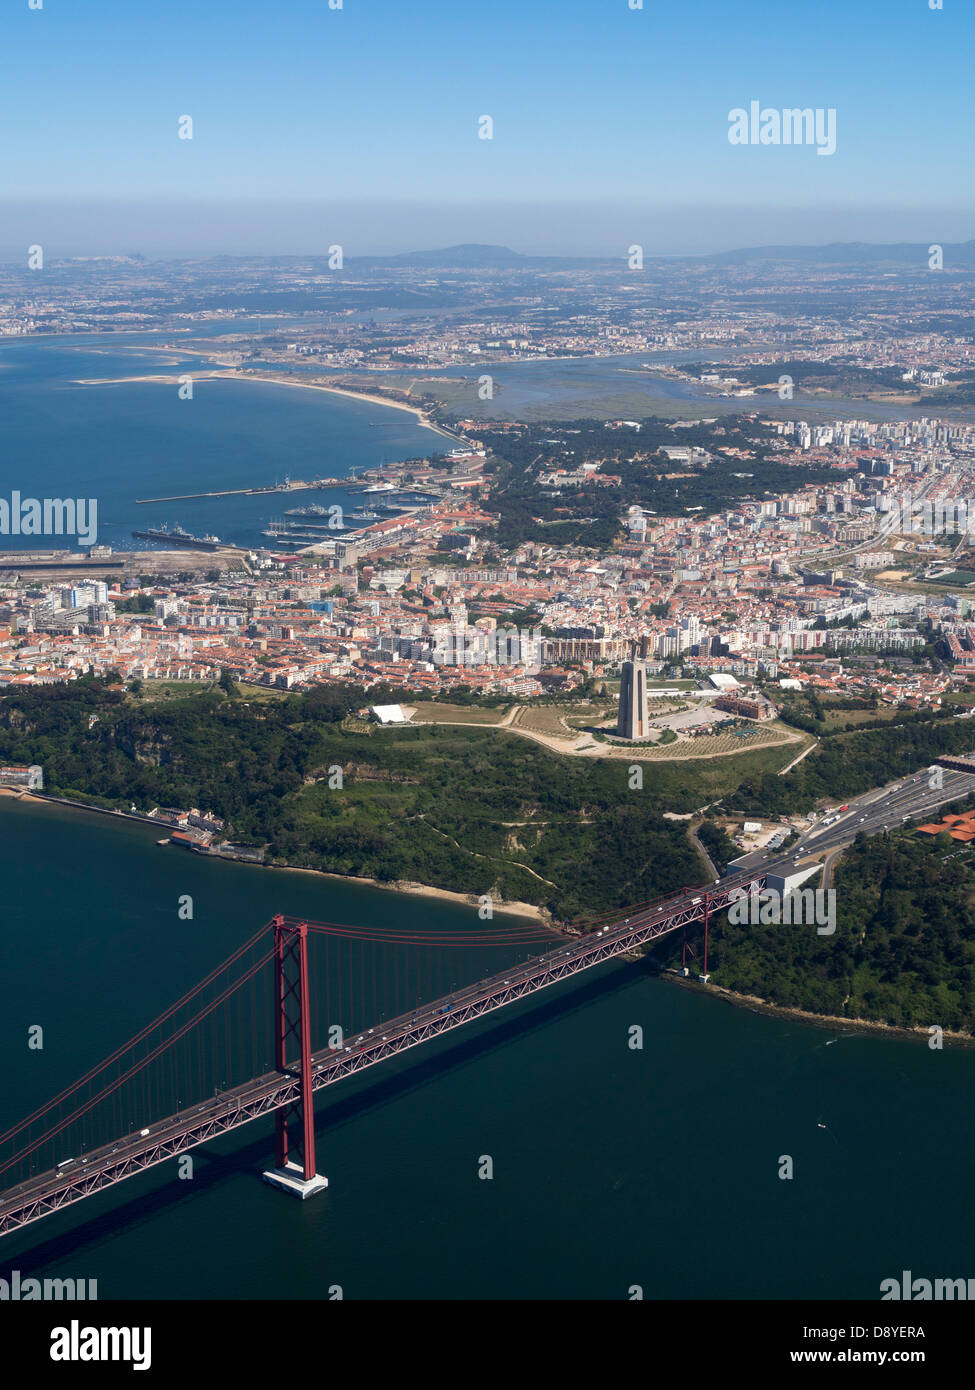 Vue aérienne du pont 25 de Abril sur la rivière Tejo entre Lisbonne et Almada, Portugal, Europe Banque D'Images